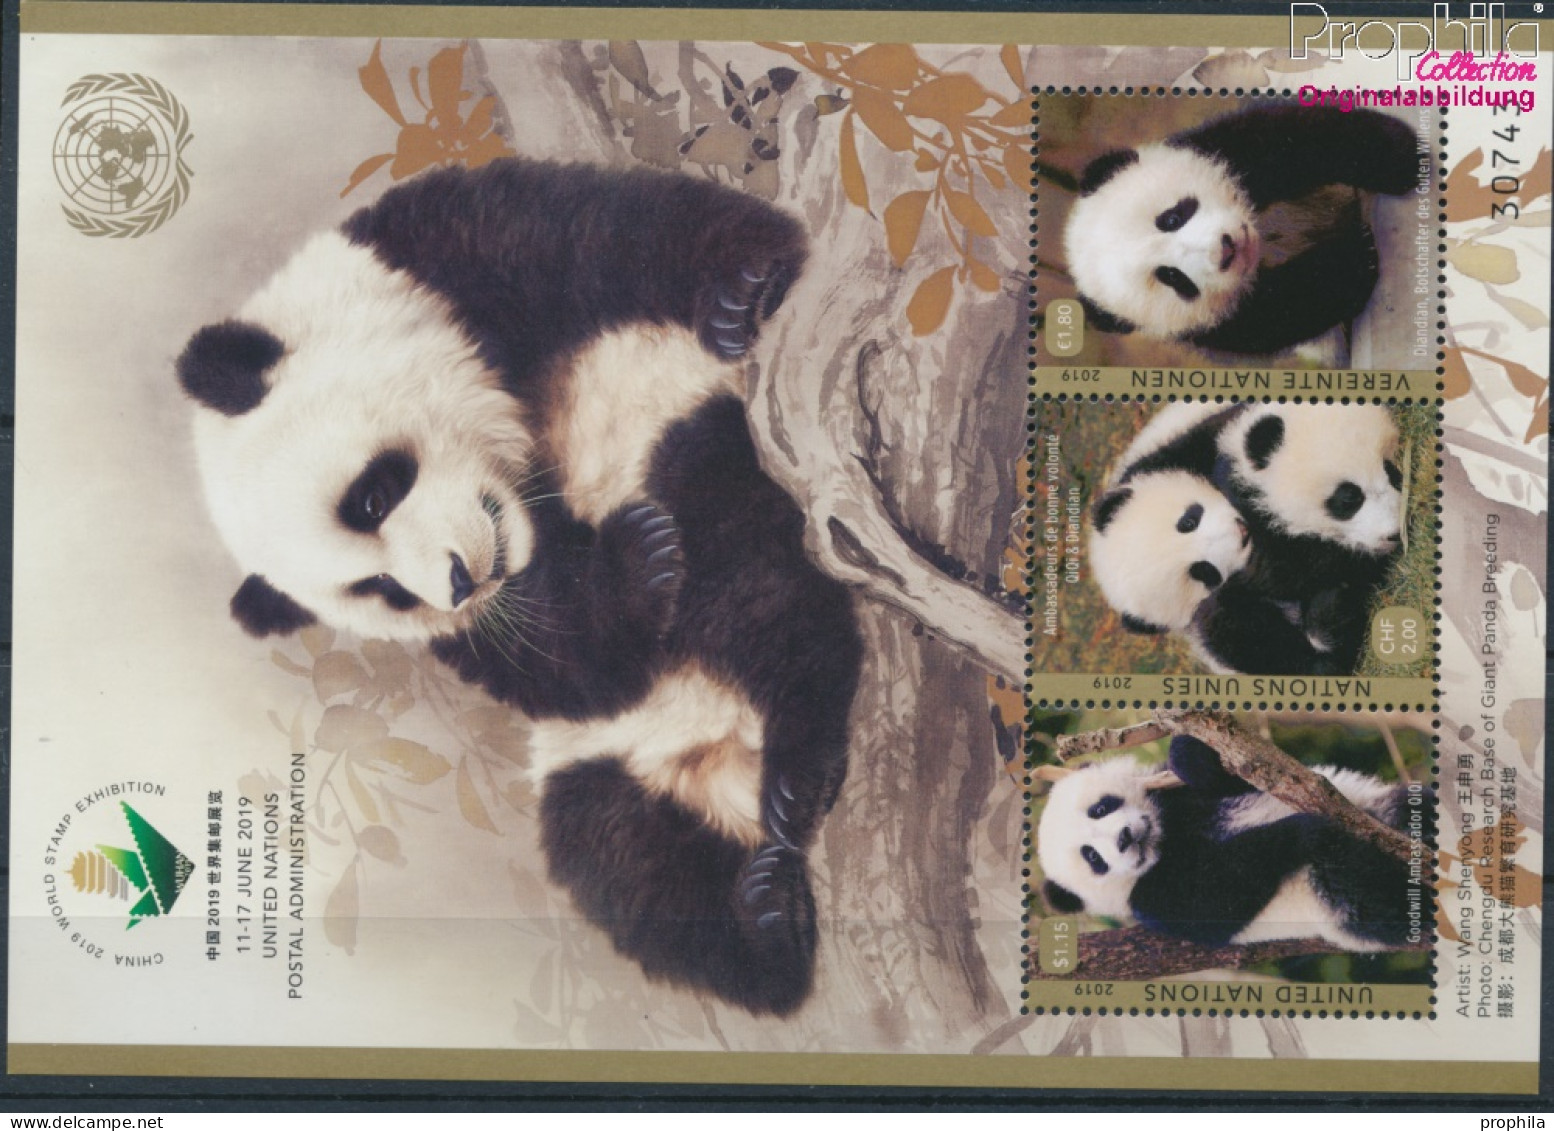 UNO - Genf Block55 (kompl.Ausg.) Postfrisch 2019 Pandabär (10194032 - Ungebraucht